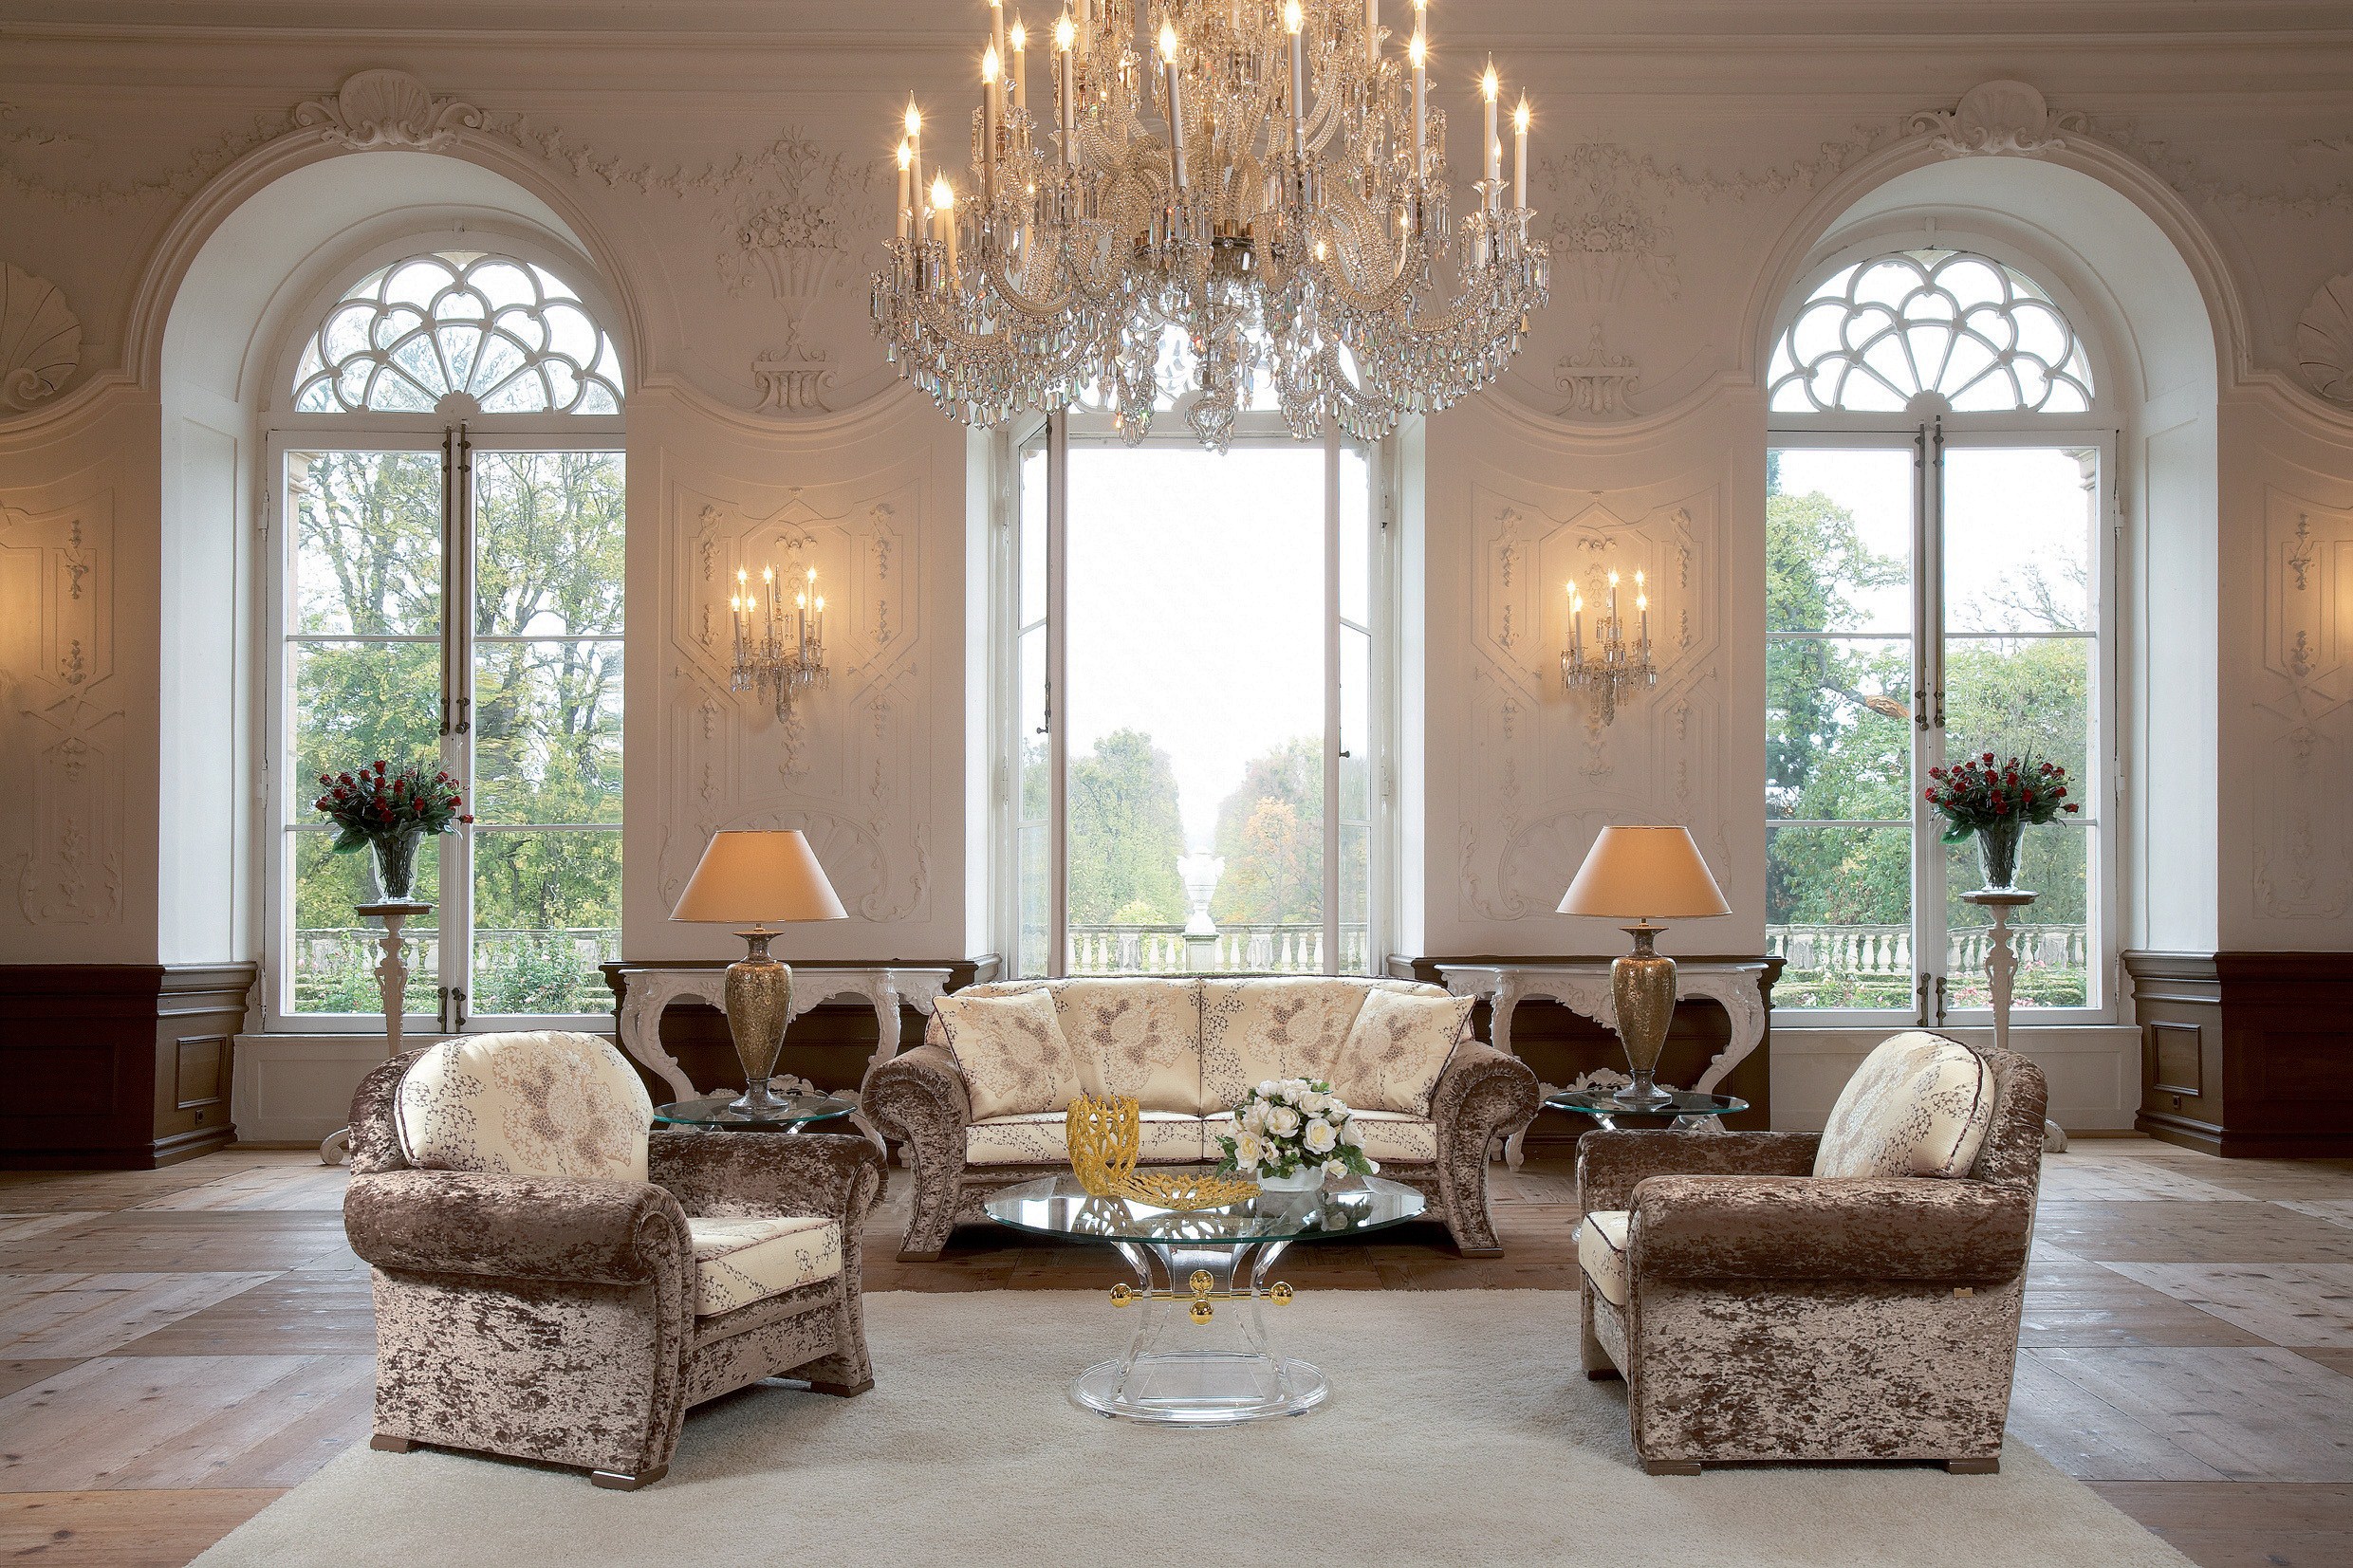 Hall bedroom. Красивый интерьер. Классический стиль в интерьере. Венецианский стиль в интерьере гостиной. Элегантный стиль в интерьере.